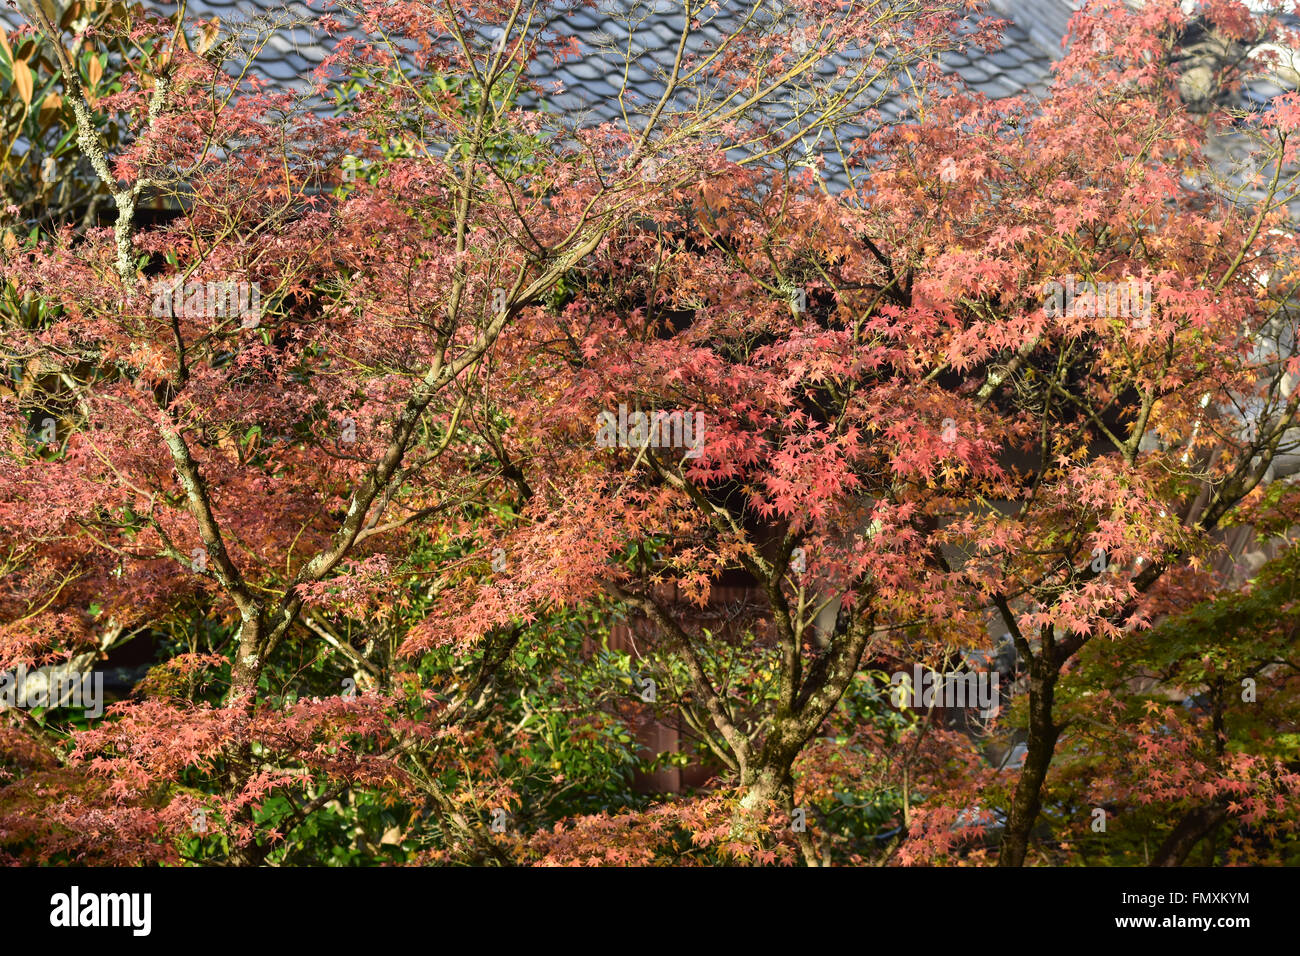 autumn foliage at Eikando Temple in Kyoto, Japan Stock Photo